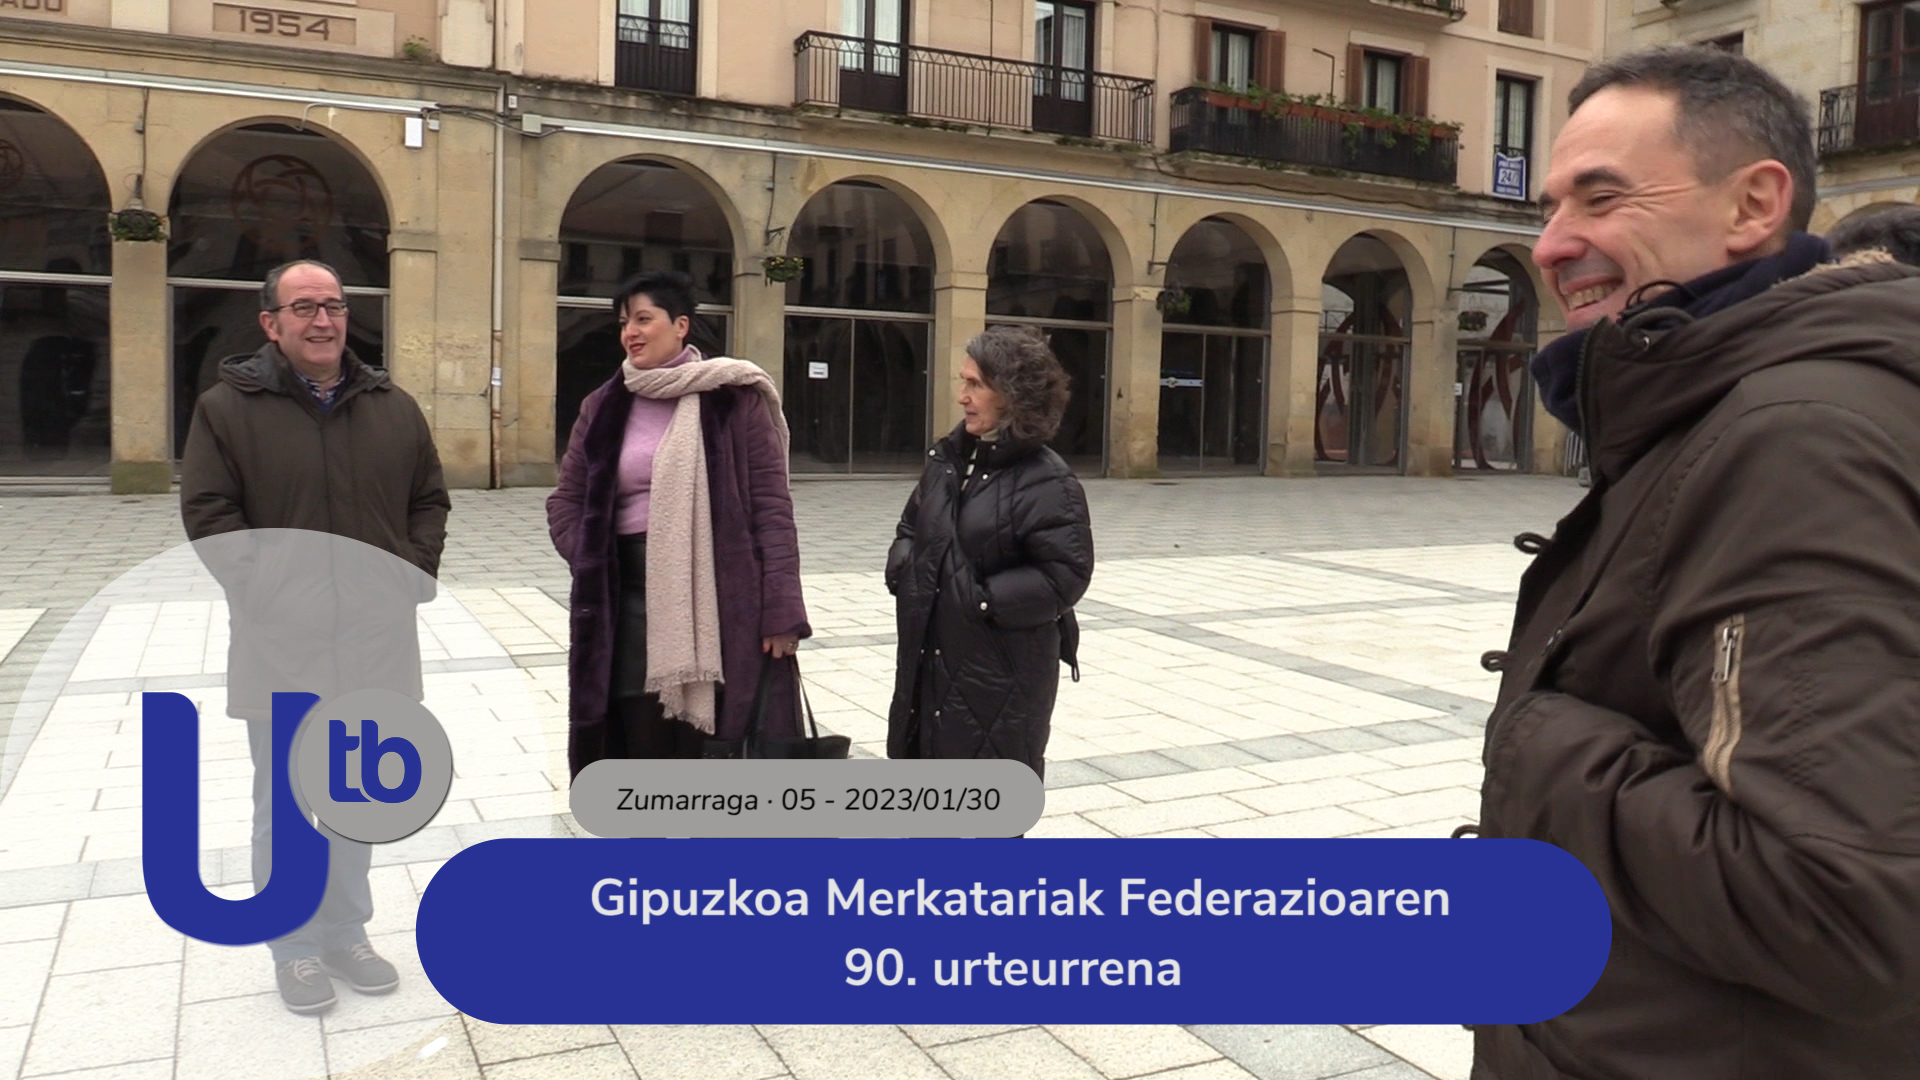 90 aniversario de la Federación Gipuzkoa Merkatariak / Gipuzkoa Merkatariak Federazioaren 90. urteurrena 